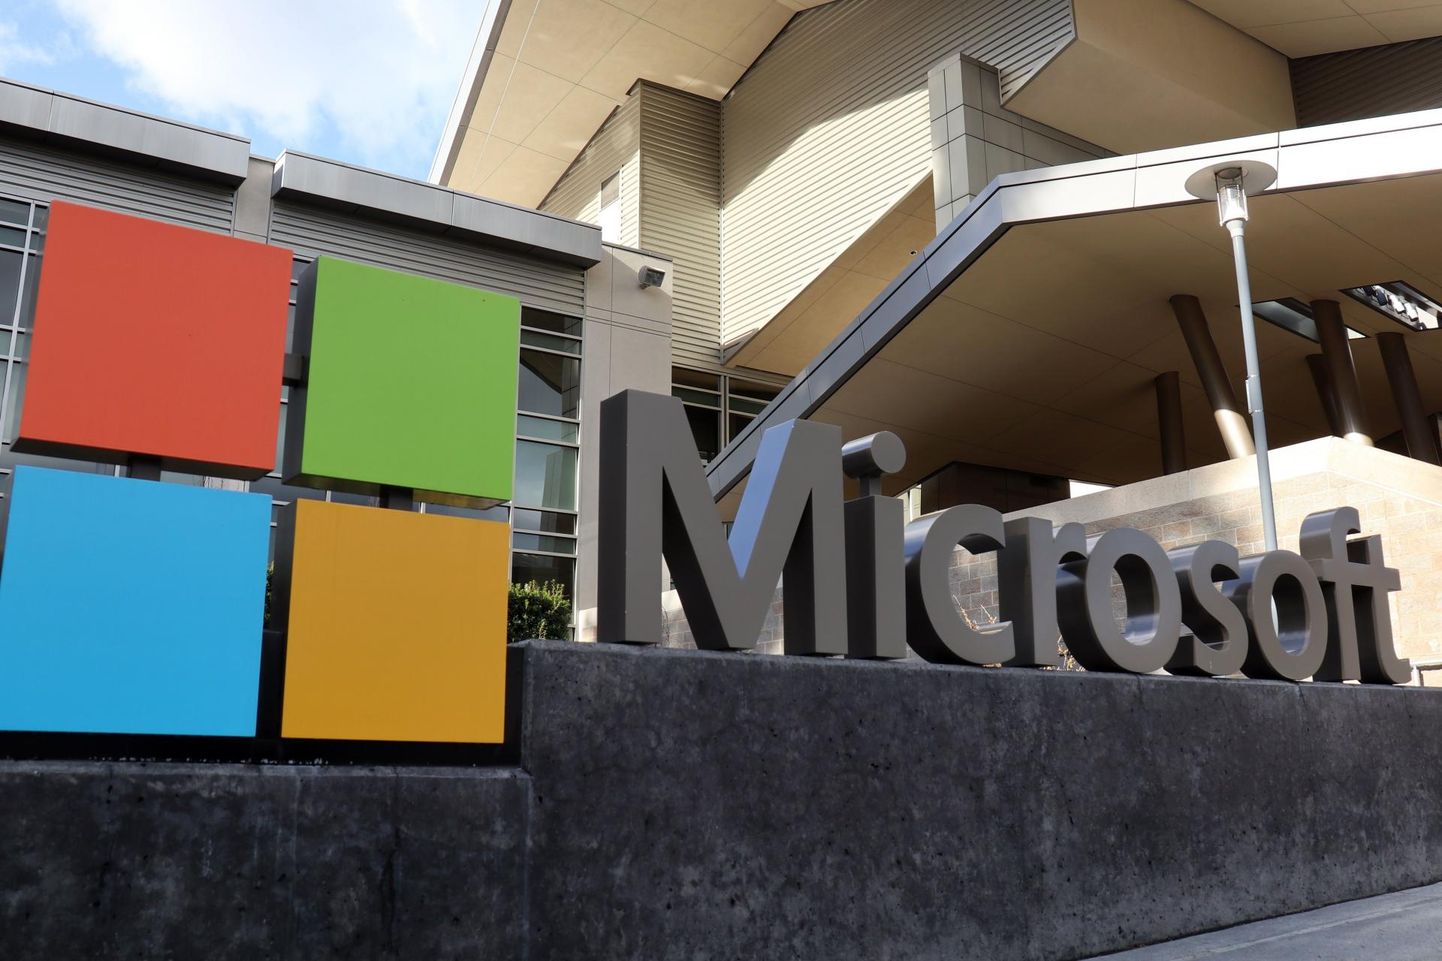 Microsofti logo ettevõtte peakorteri ees.